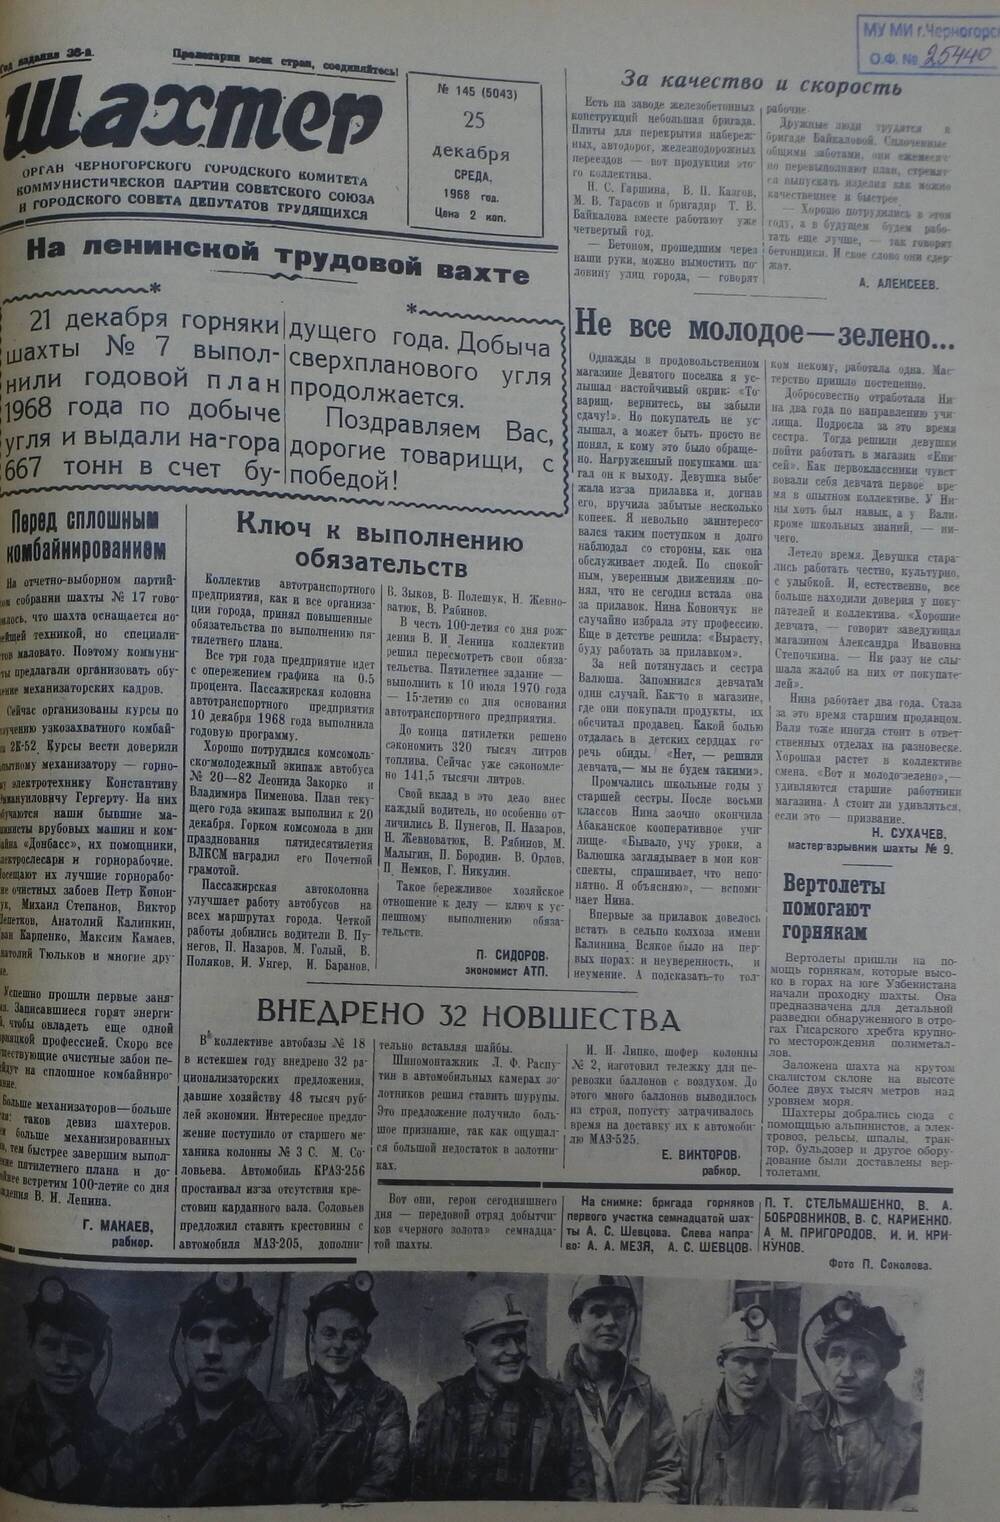 Газета «Шахтер». Выпуск № 145 от 25.12.1968 г.